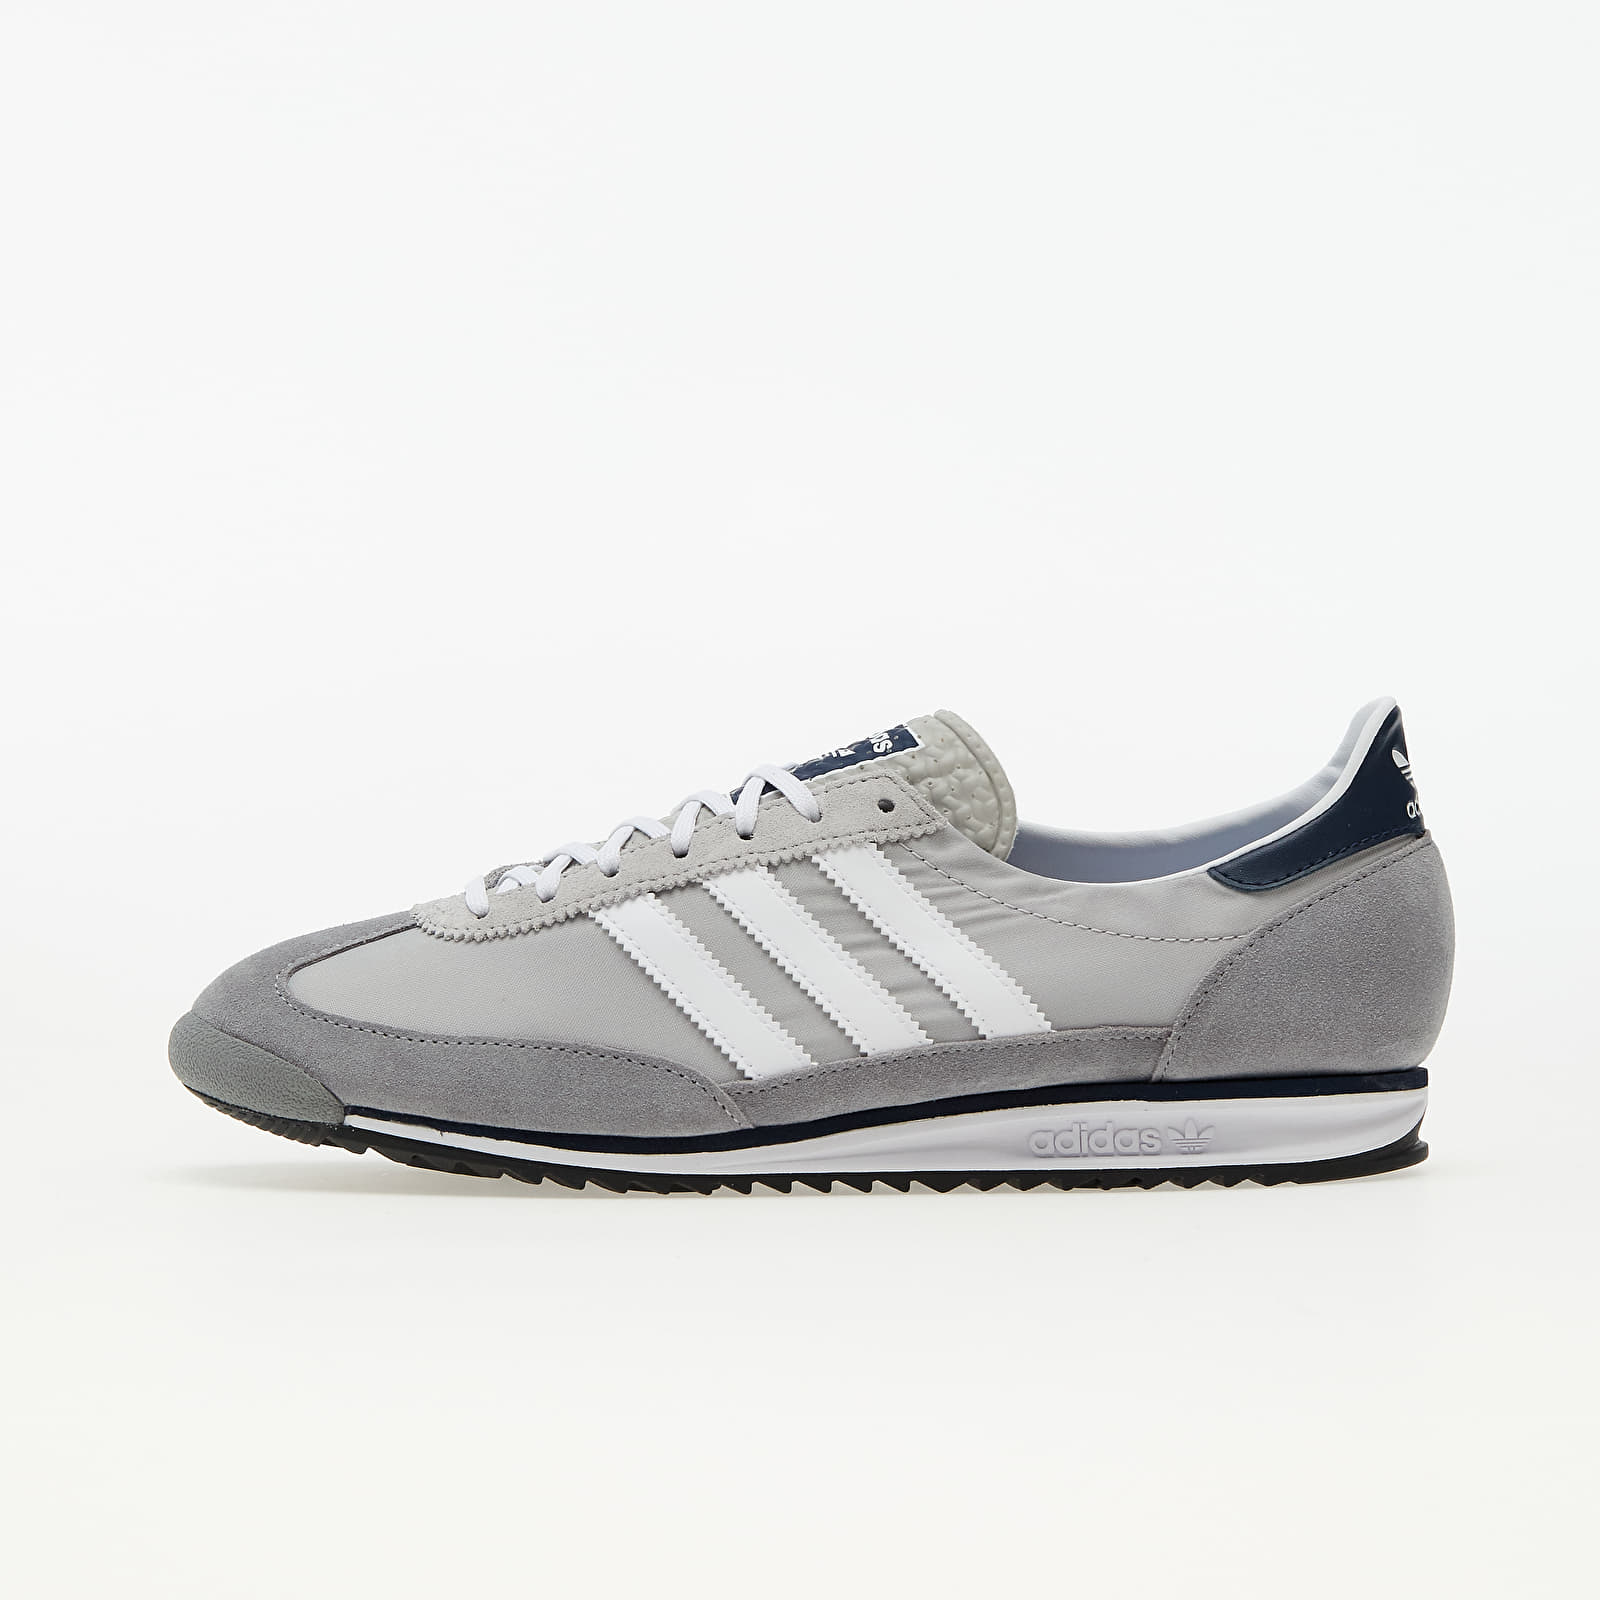 Herren Sneaker und Schuhe adidas SL 72 Grey Two/ Ftw White/ Grey Three